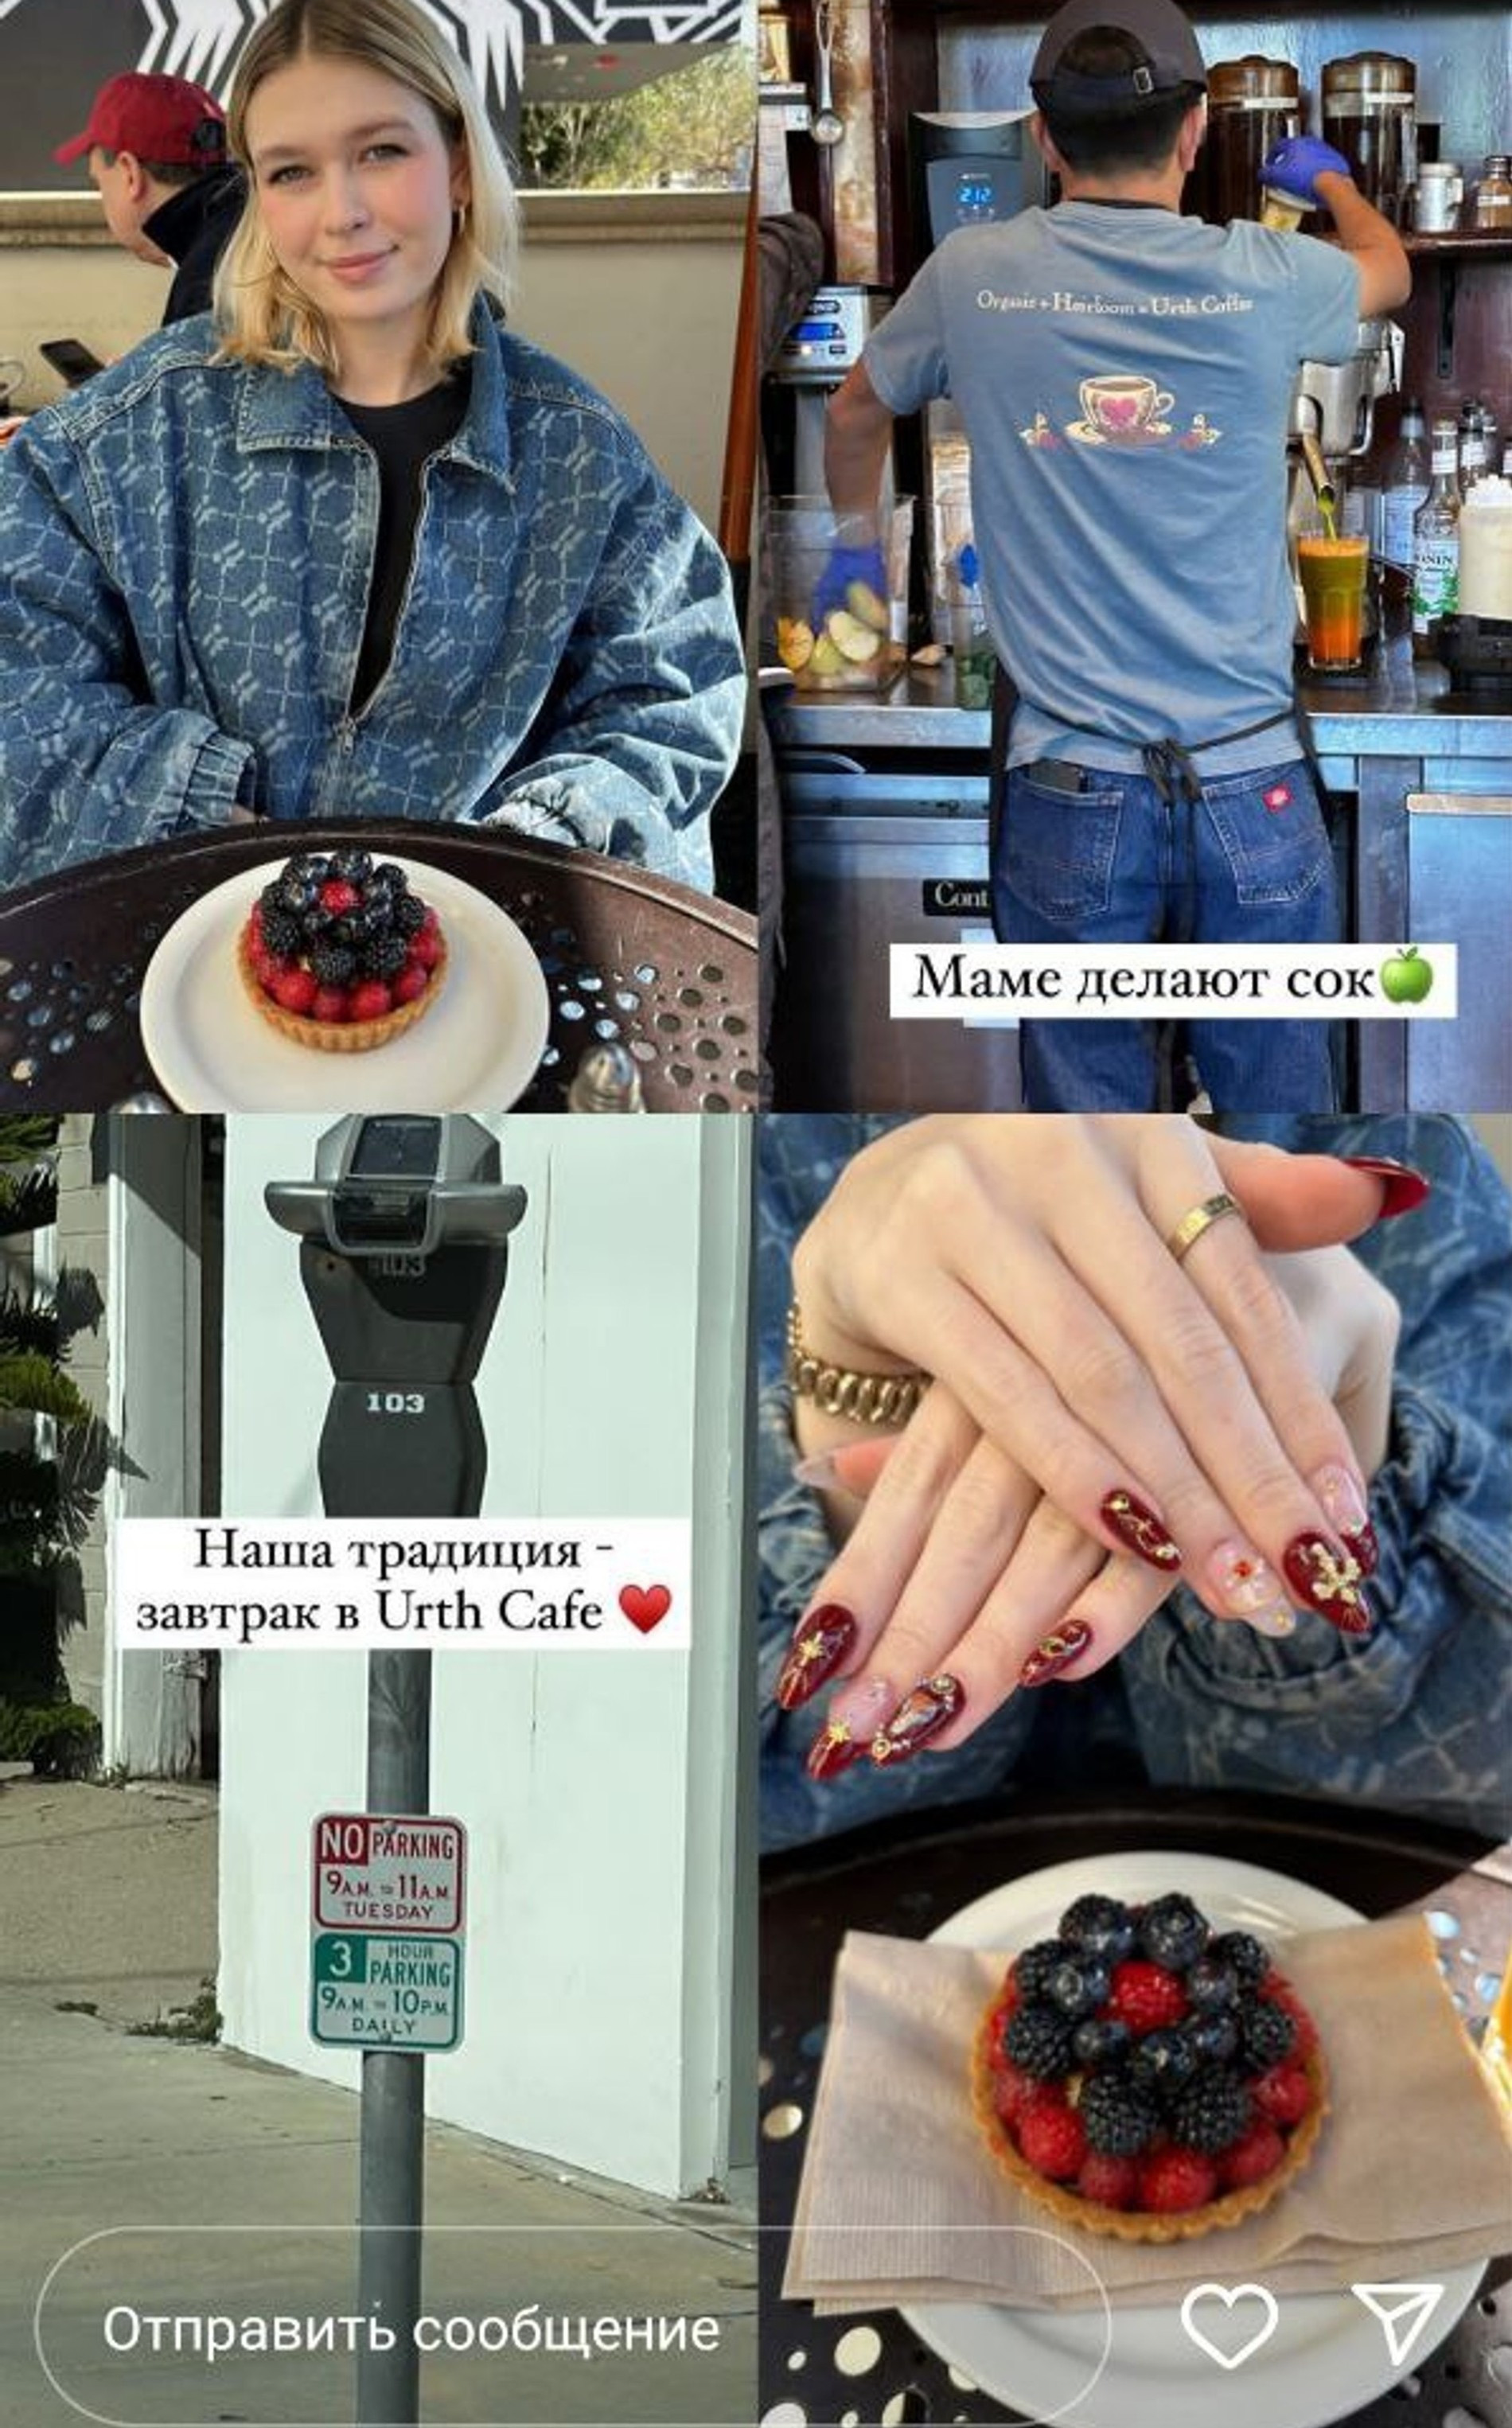 Первым делом звездная мама и дочь отправились завтракать в кафе
Фото: Инстаграм (запрещен в РФ) @ververa